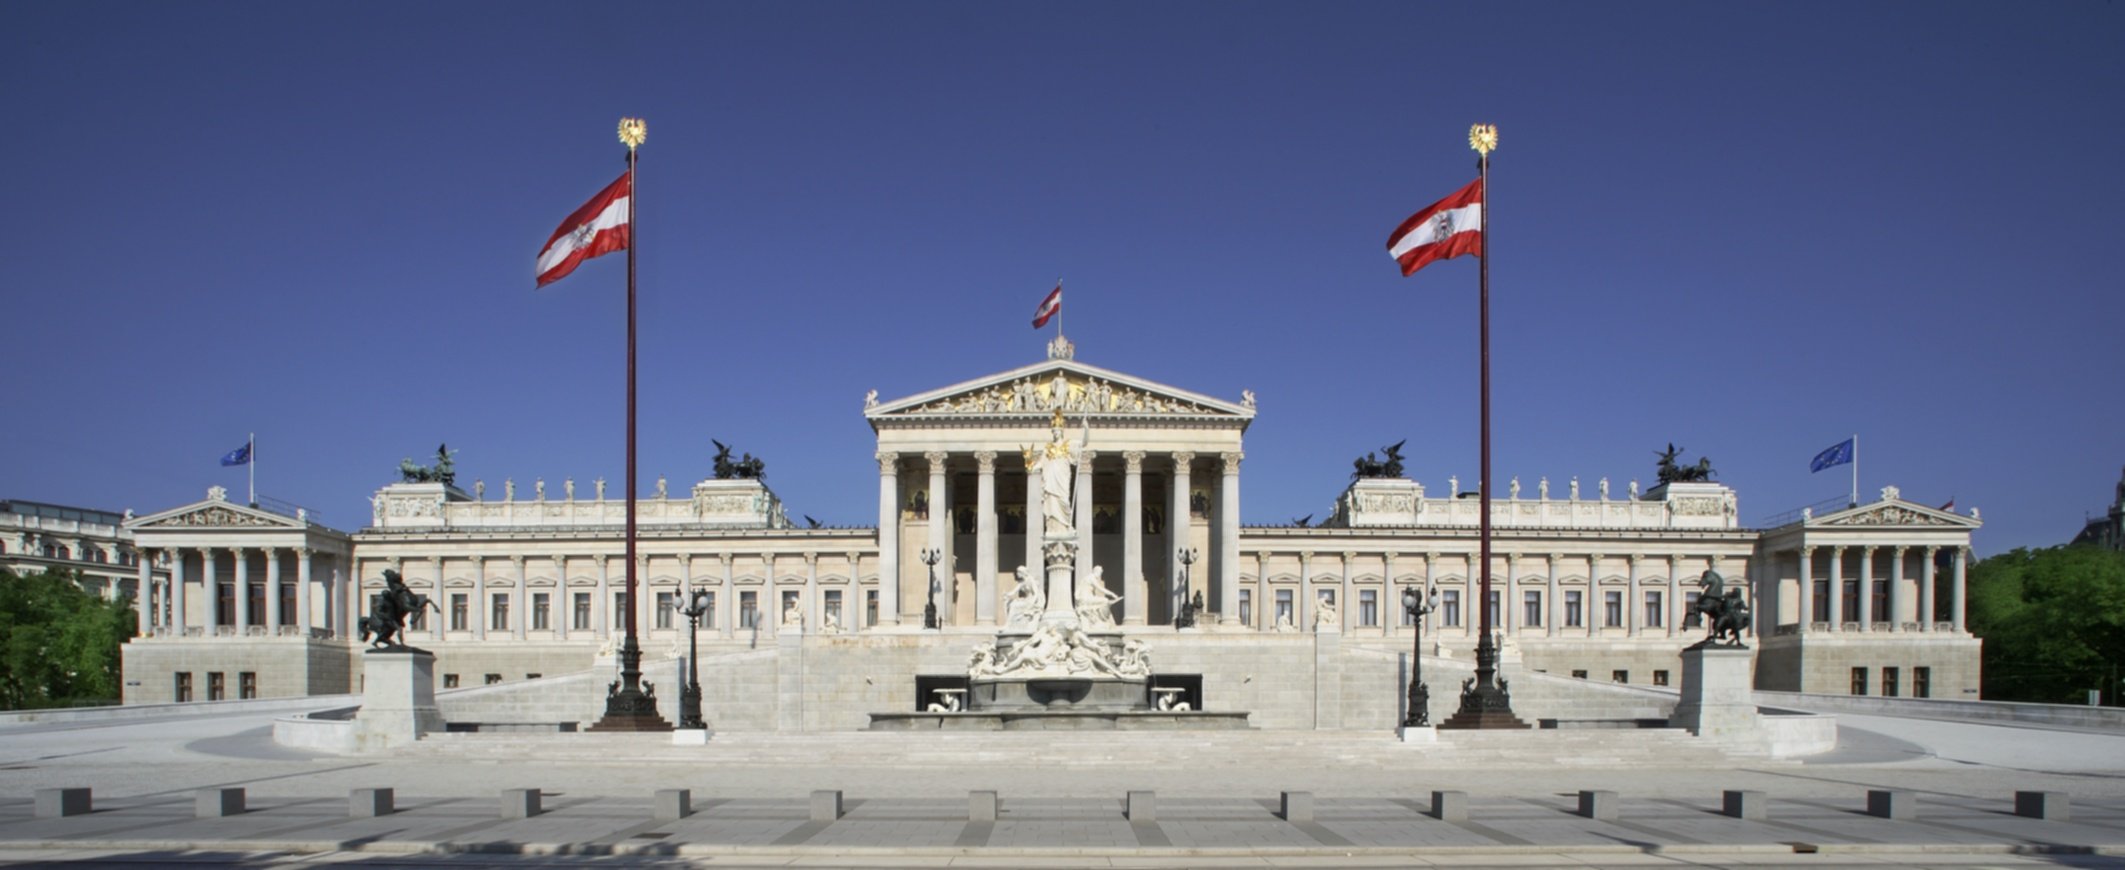 Österreichisches Parlament in Wien